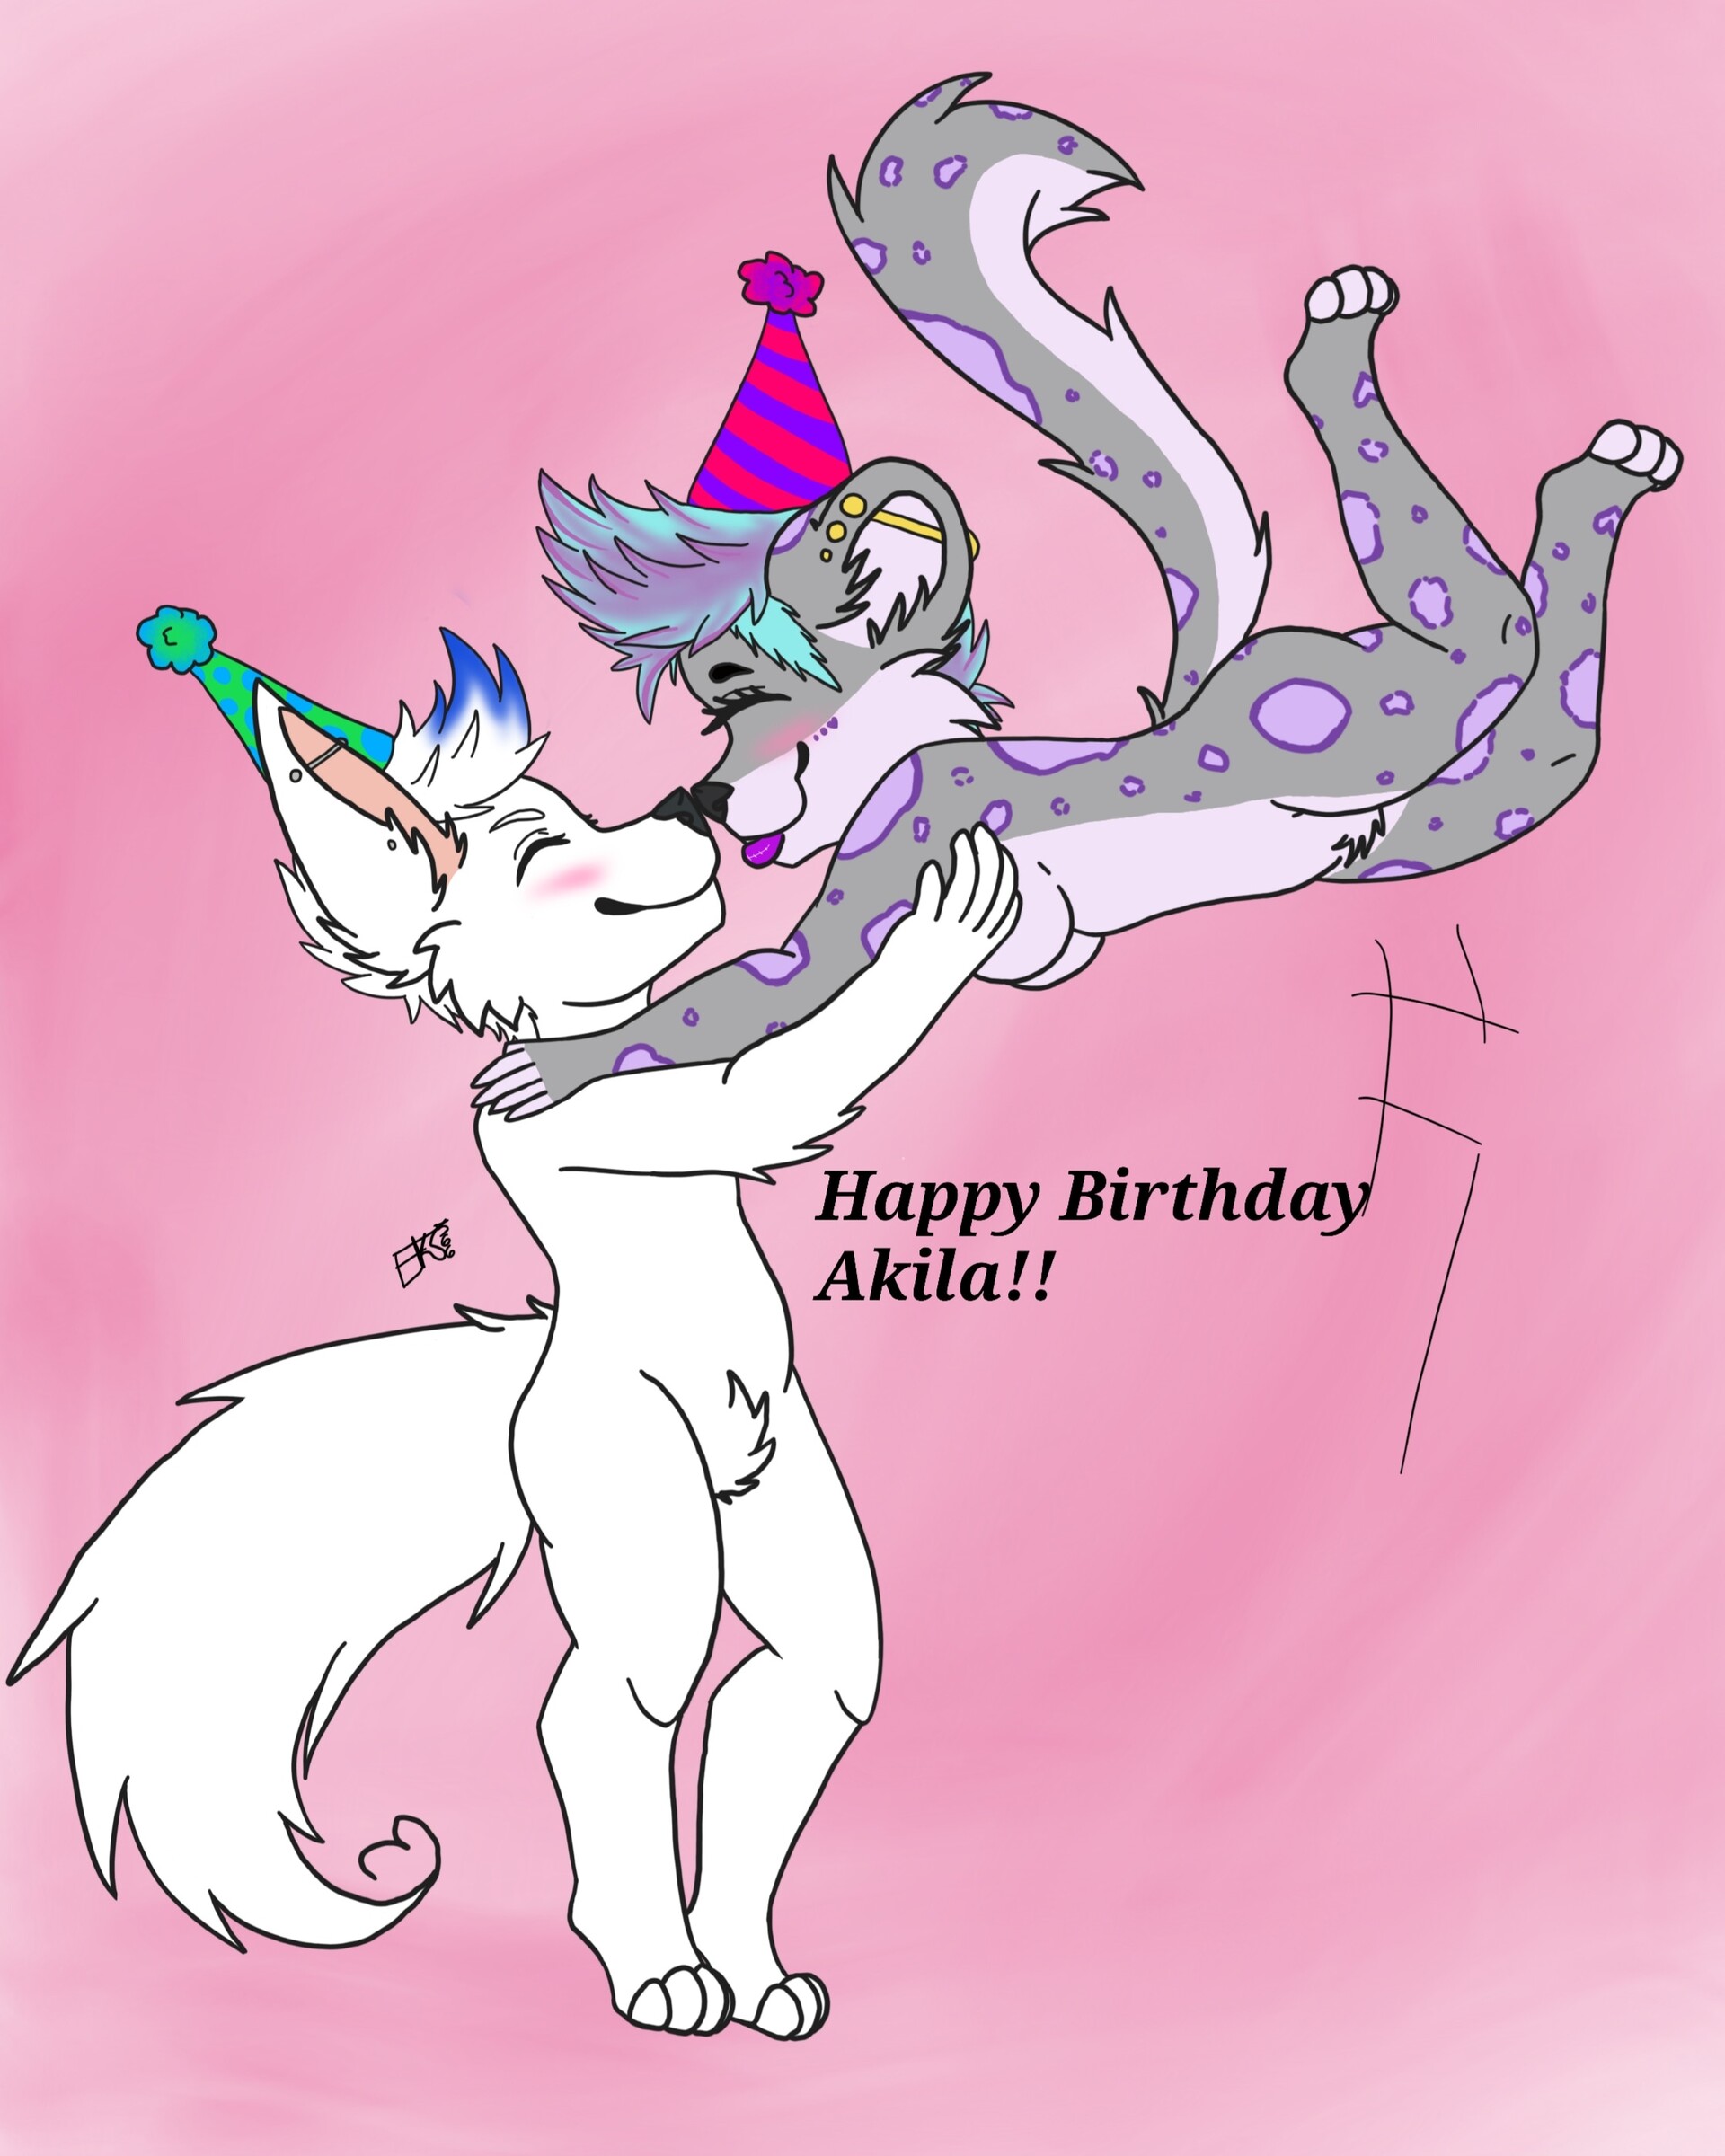 ArtStation - Happy Birthday Akila